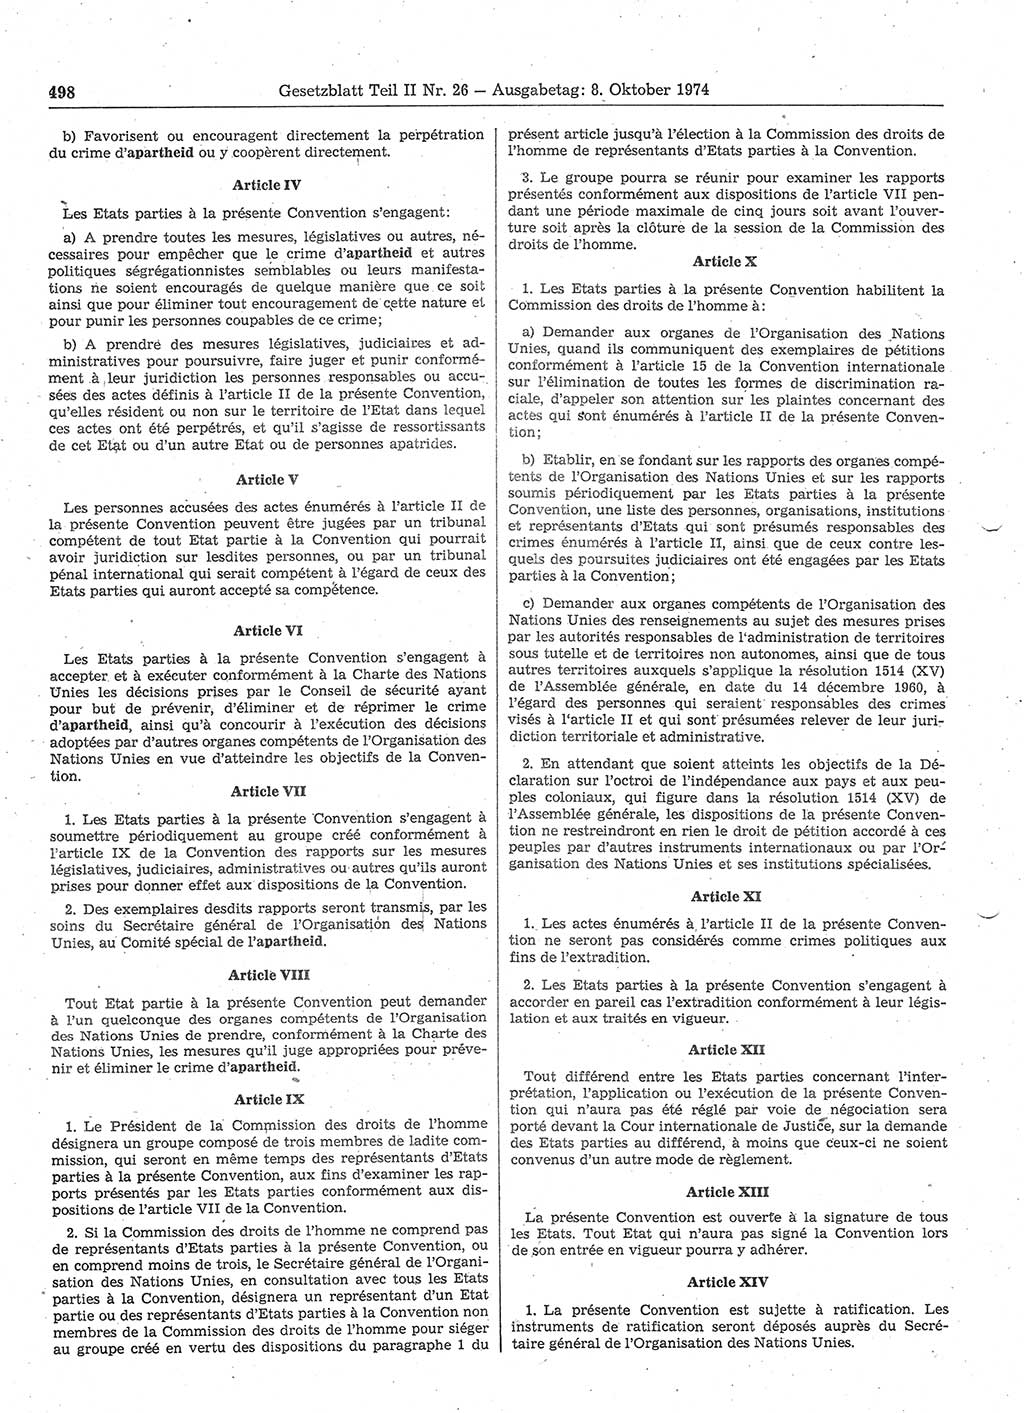 Gesetzblatt (GBl.) der Deutschen Demokratischen Republik (DDR) Teil ⅠⅠ 1974, Seite 498 (GBl. DDR ⅠⅠ 1974, S. 498)